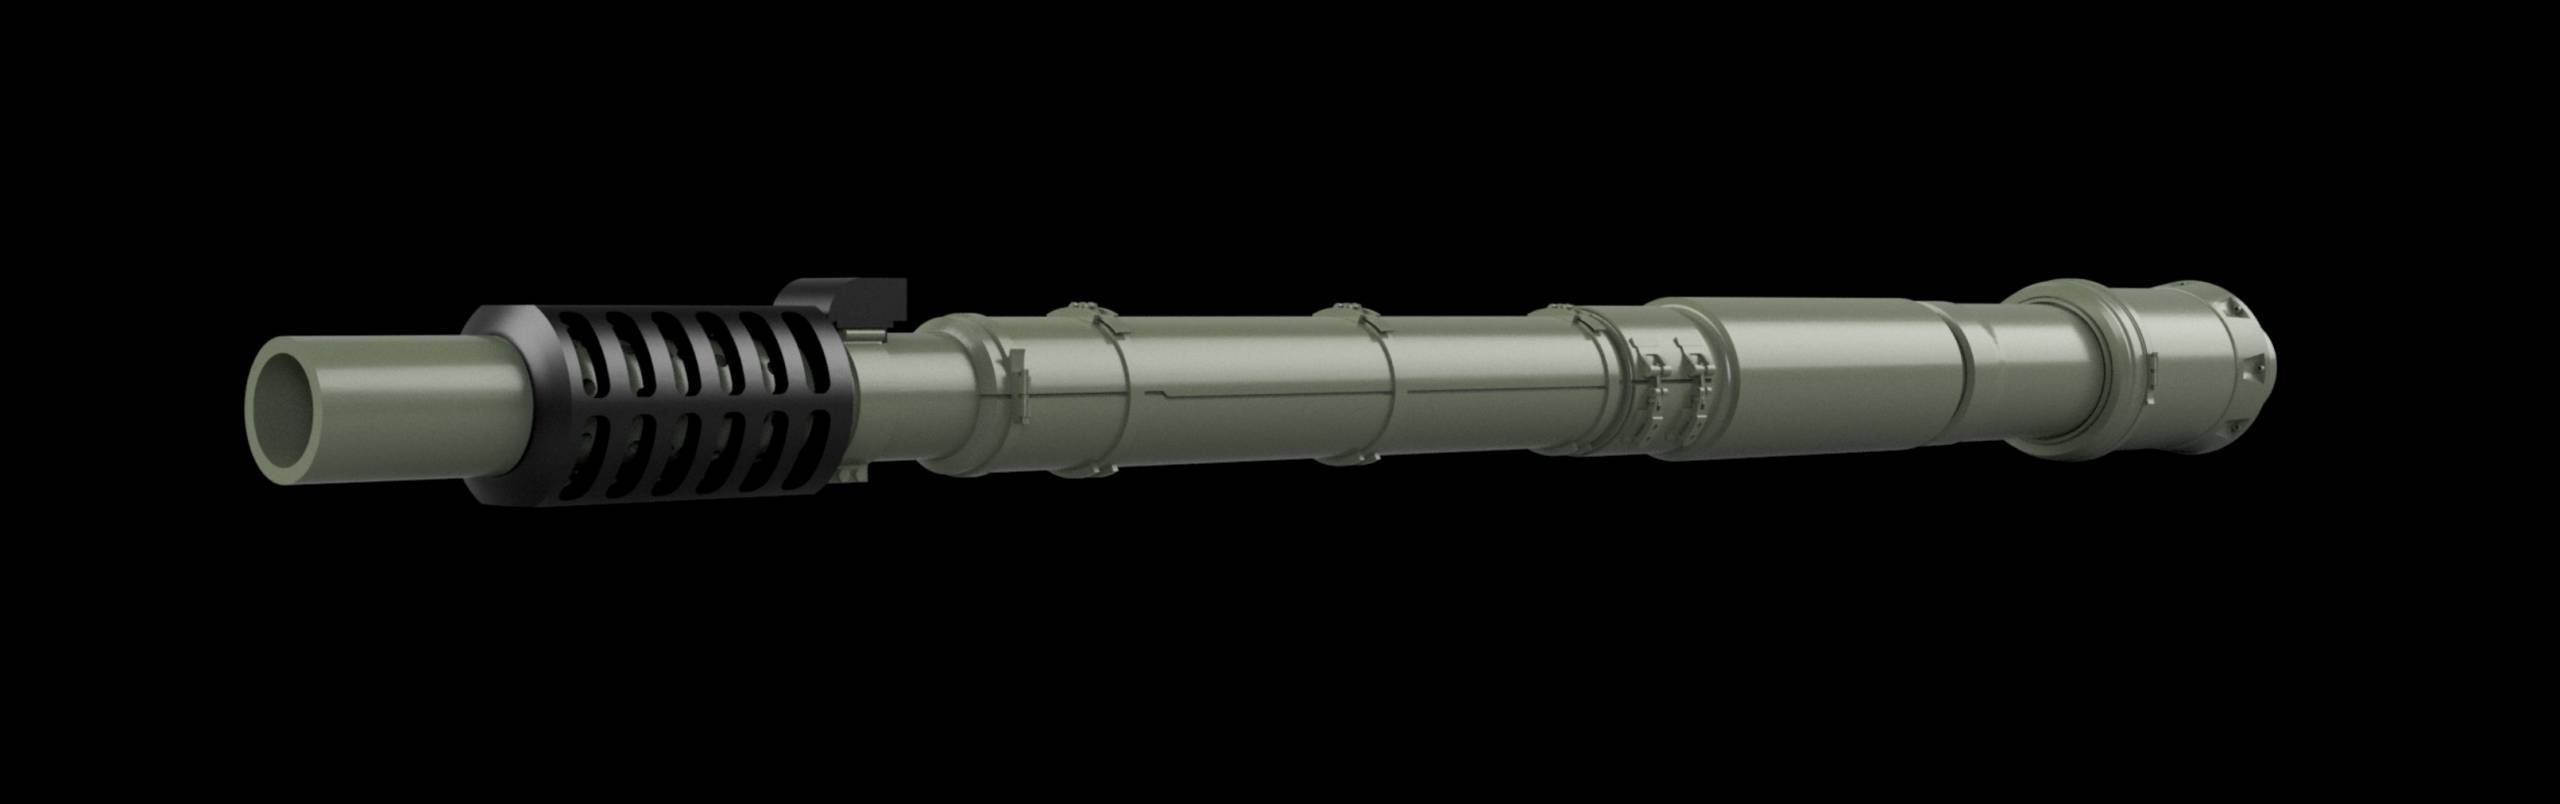 GB35-108 Oto Melara 105 Gun barrel for AFV